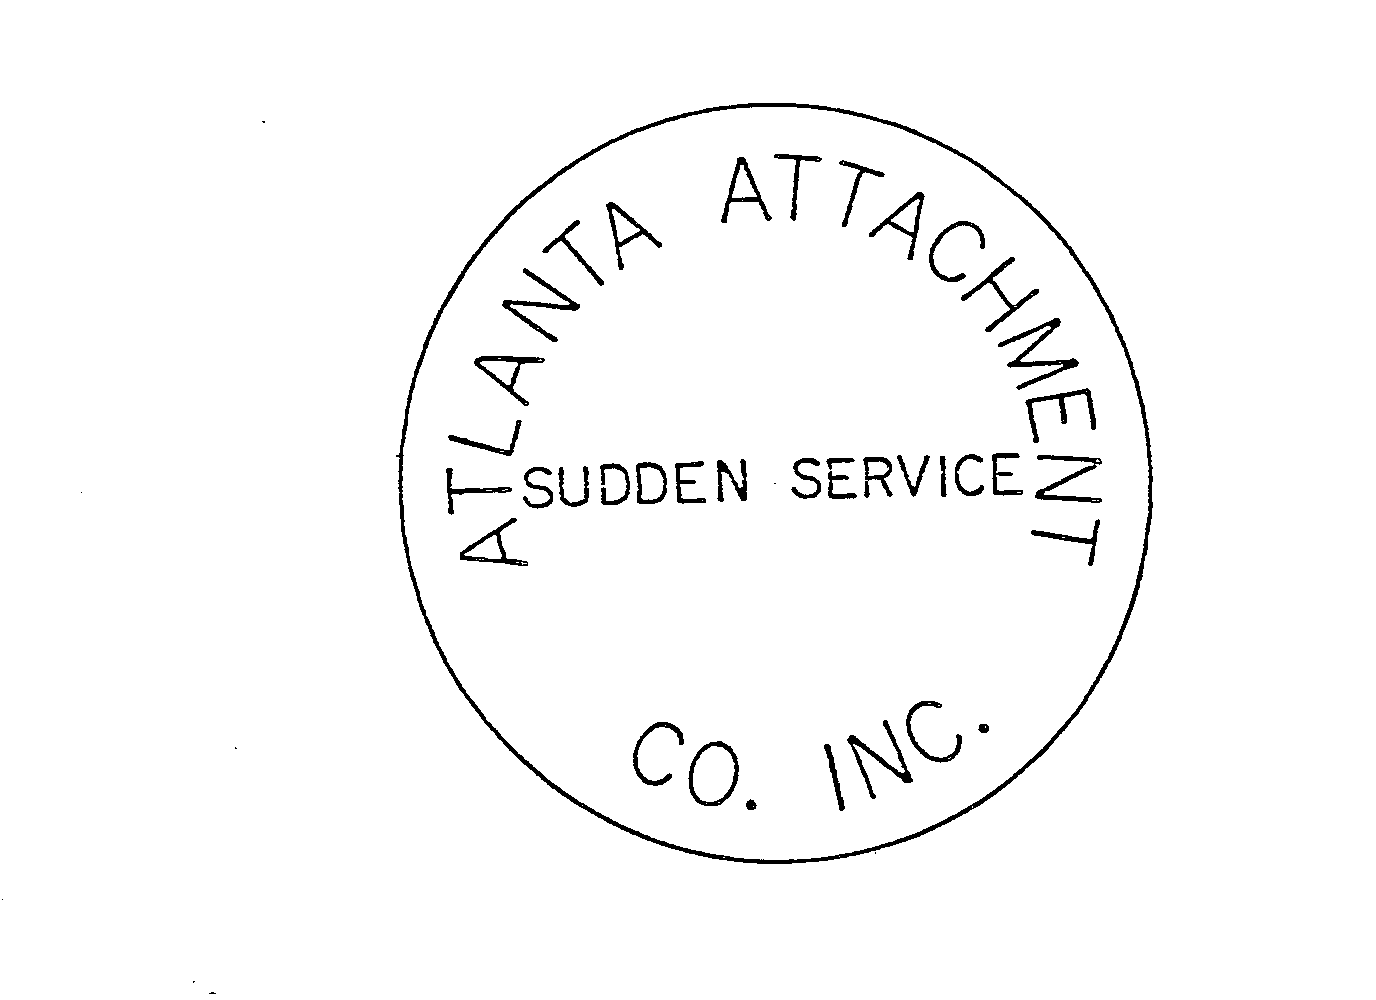  ATLANTA ATTACHMENT CO. INC. SUDDEN SERVICE